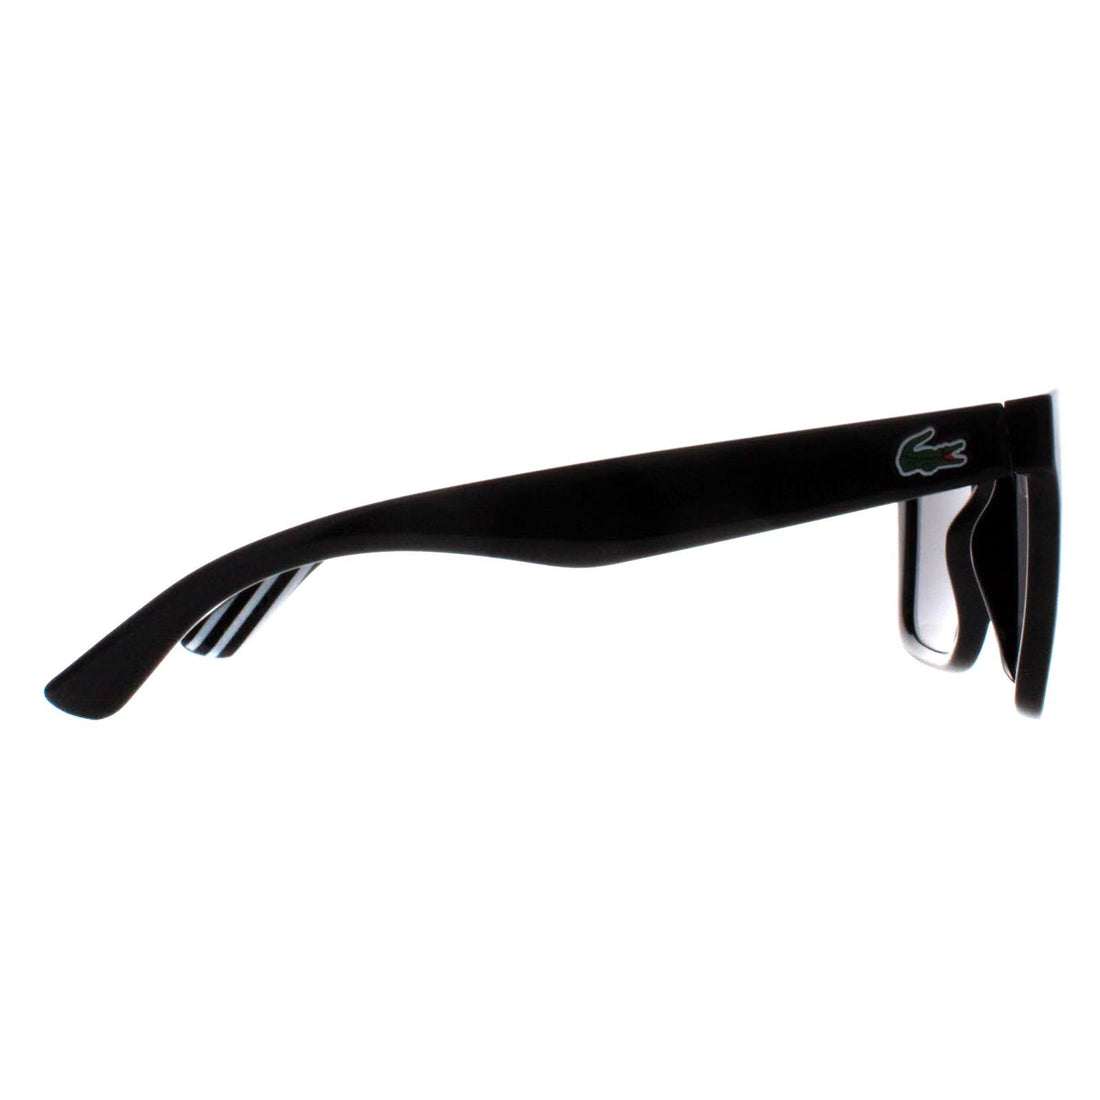 Lacoste Sunglasses L750S 001 Black Grey